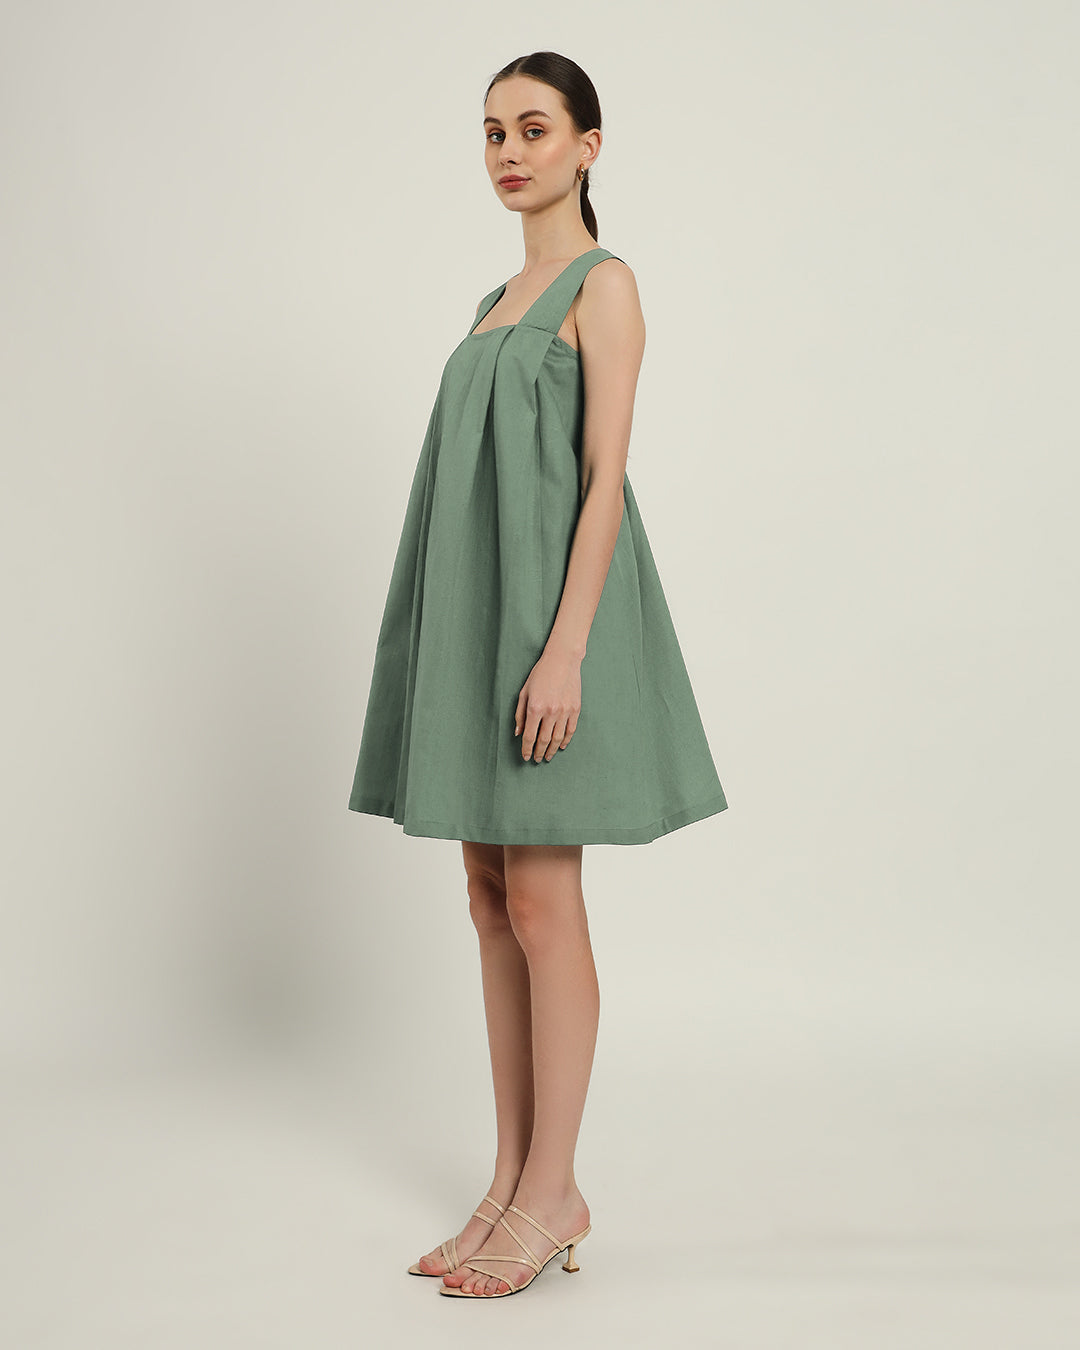 The Larissa Mint Dress